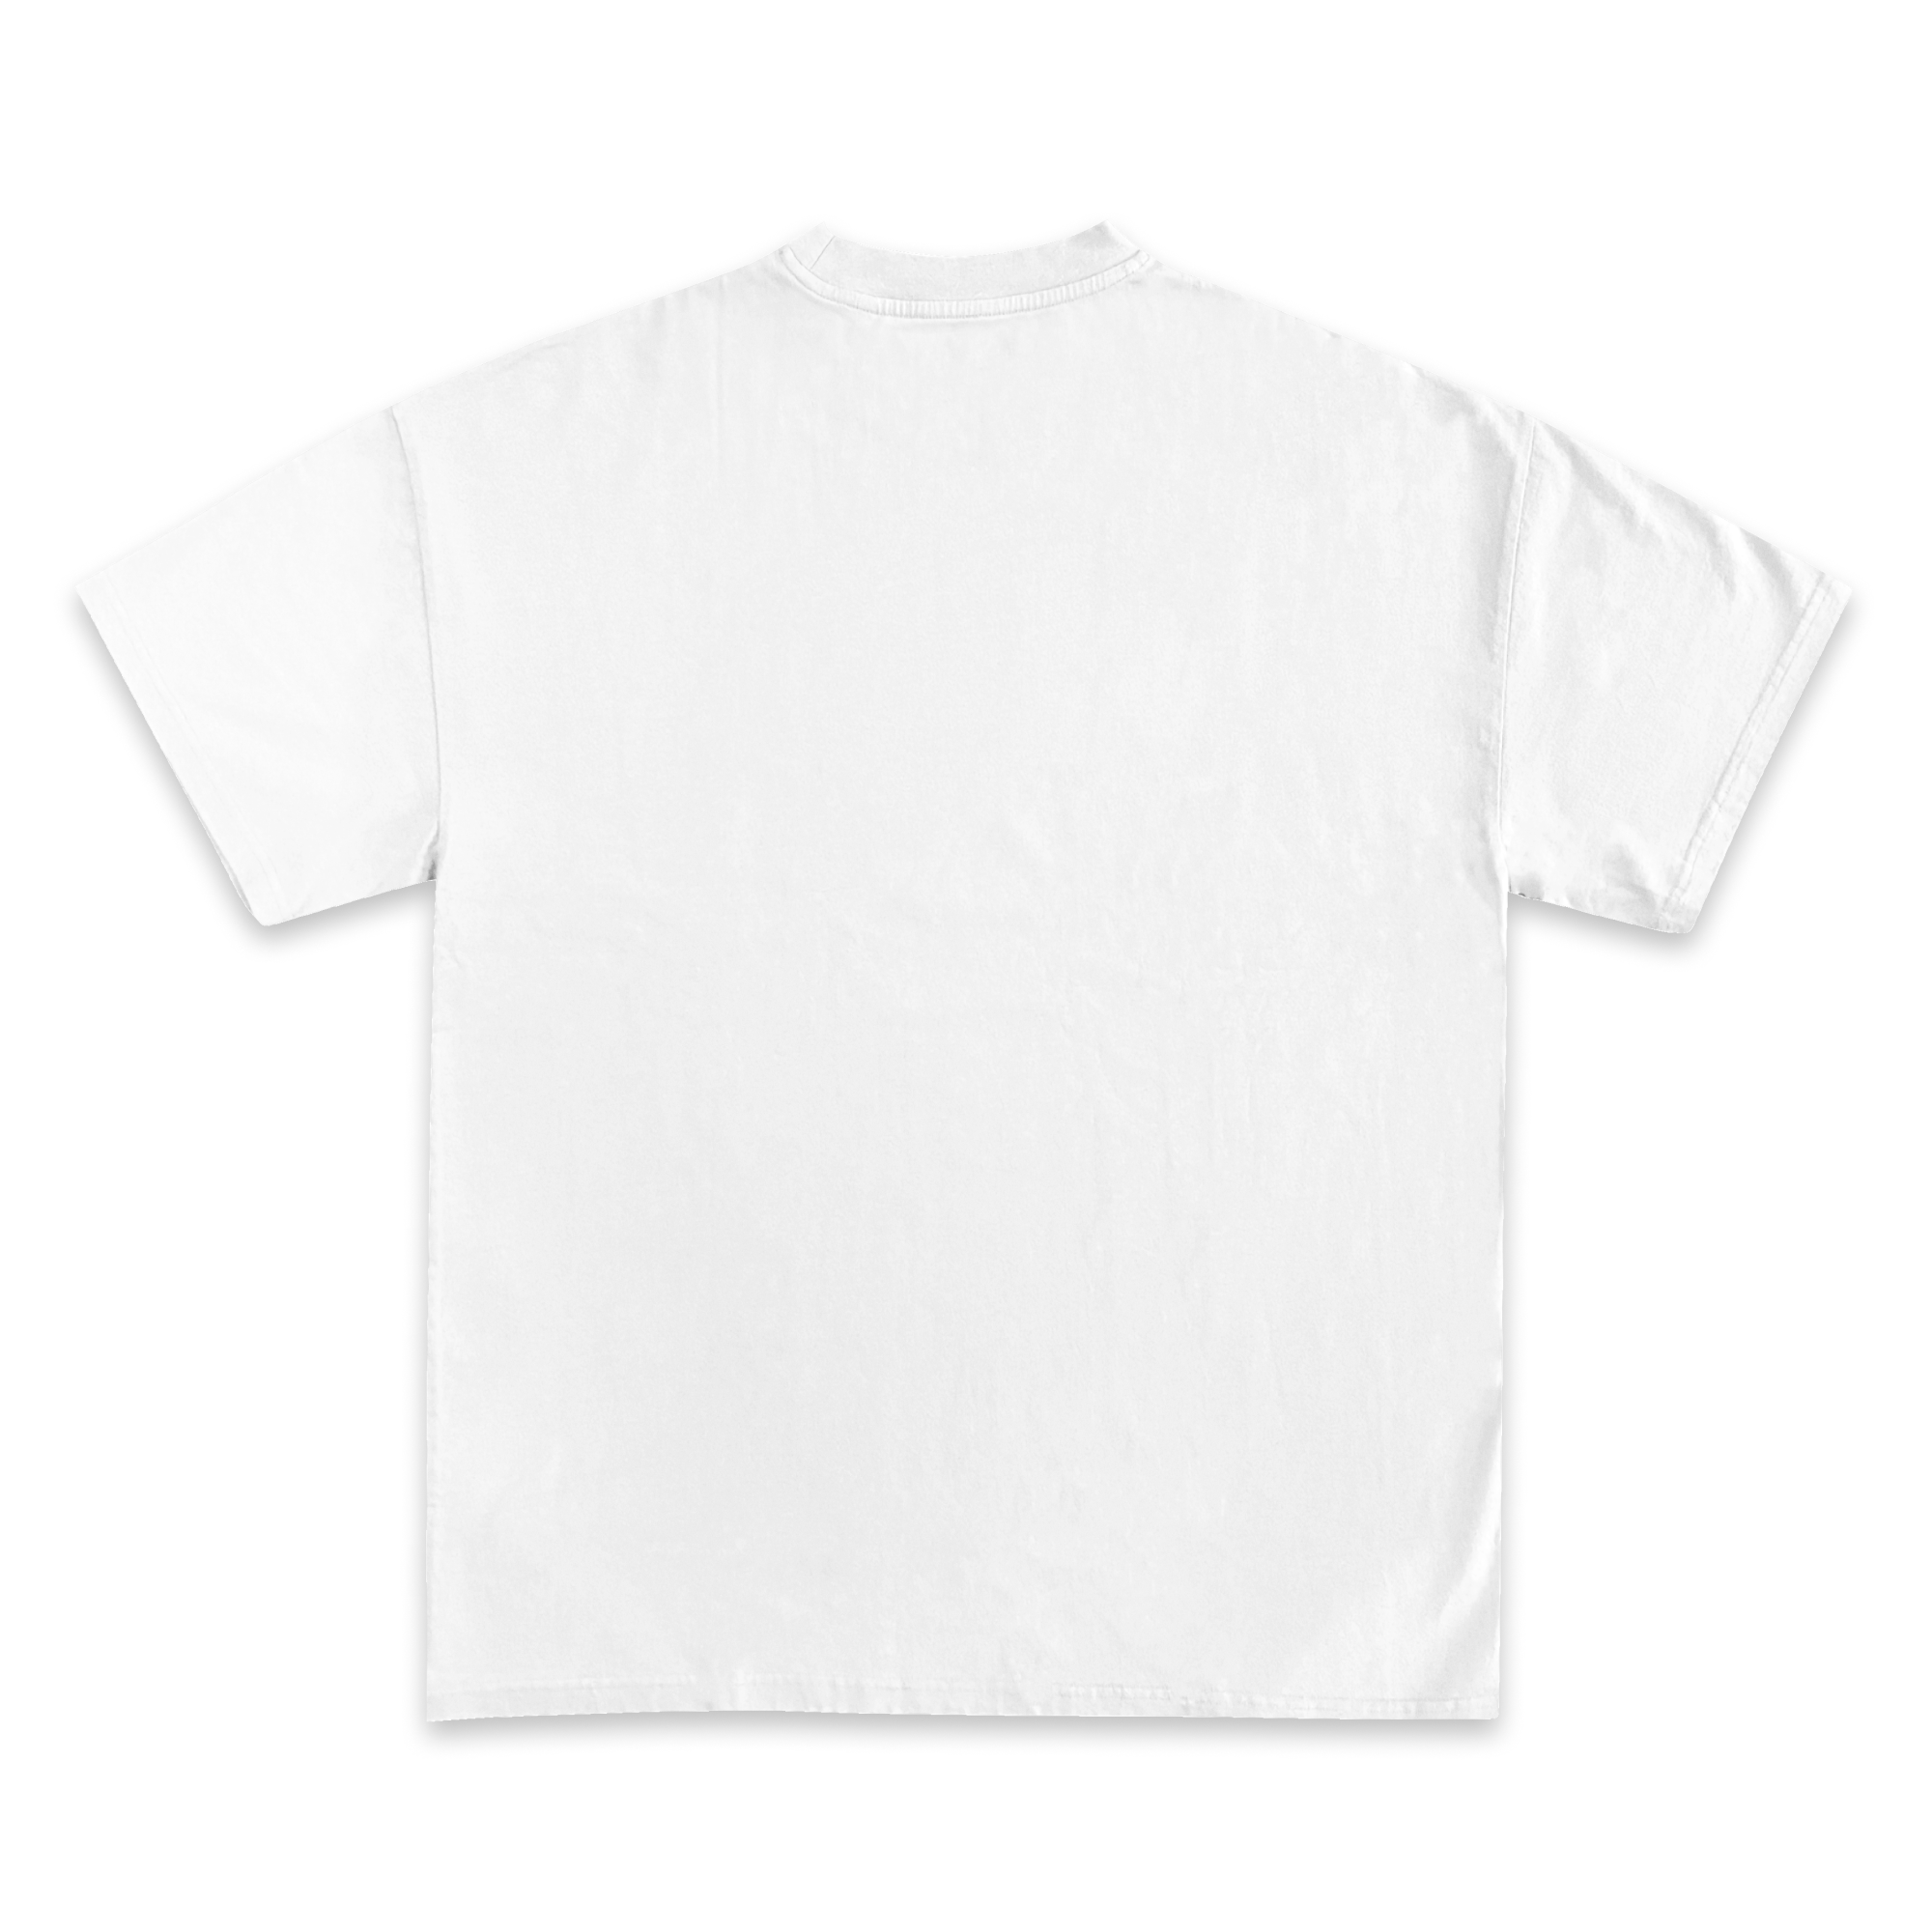 Drake Jumbo Graphic T-Shirt